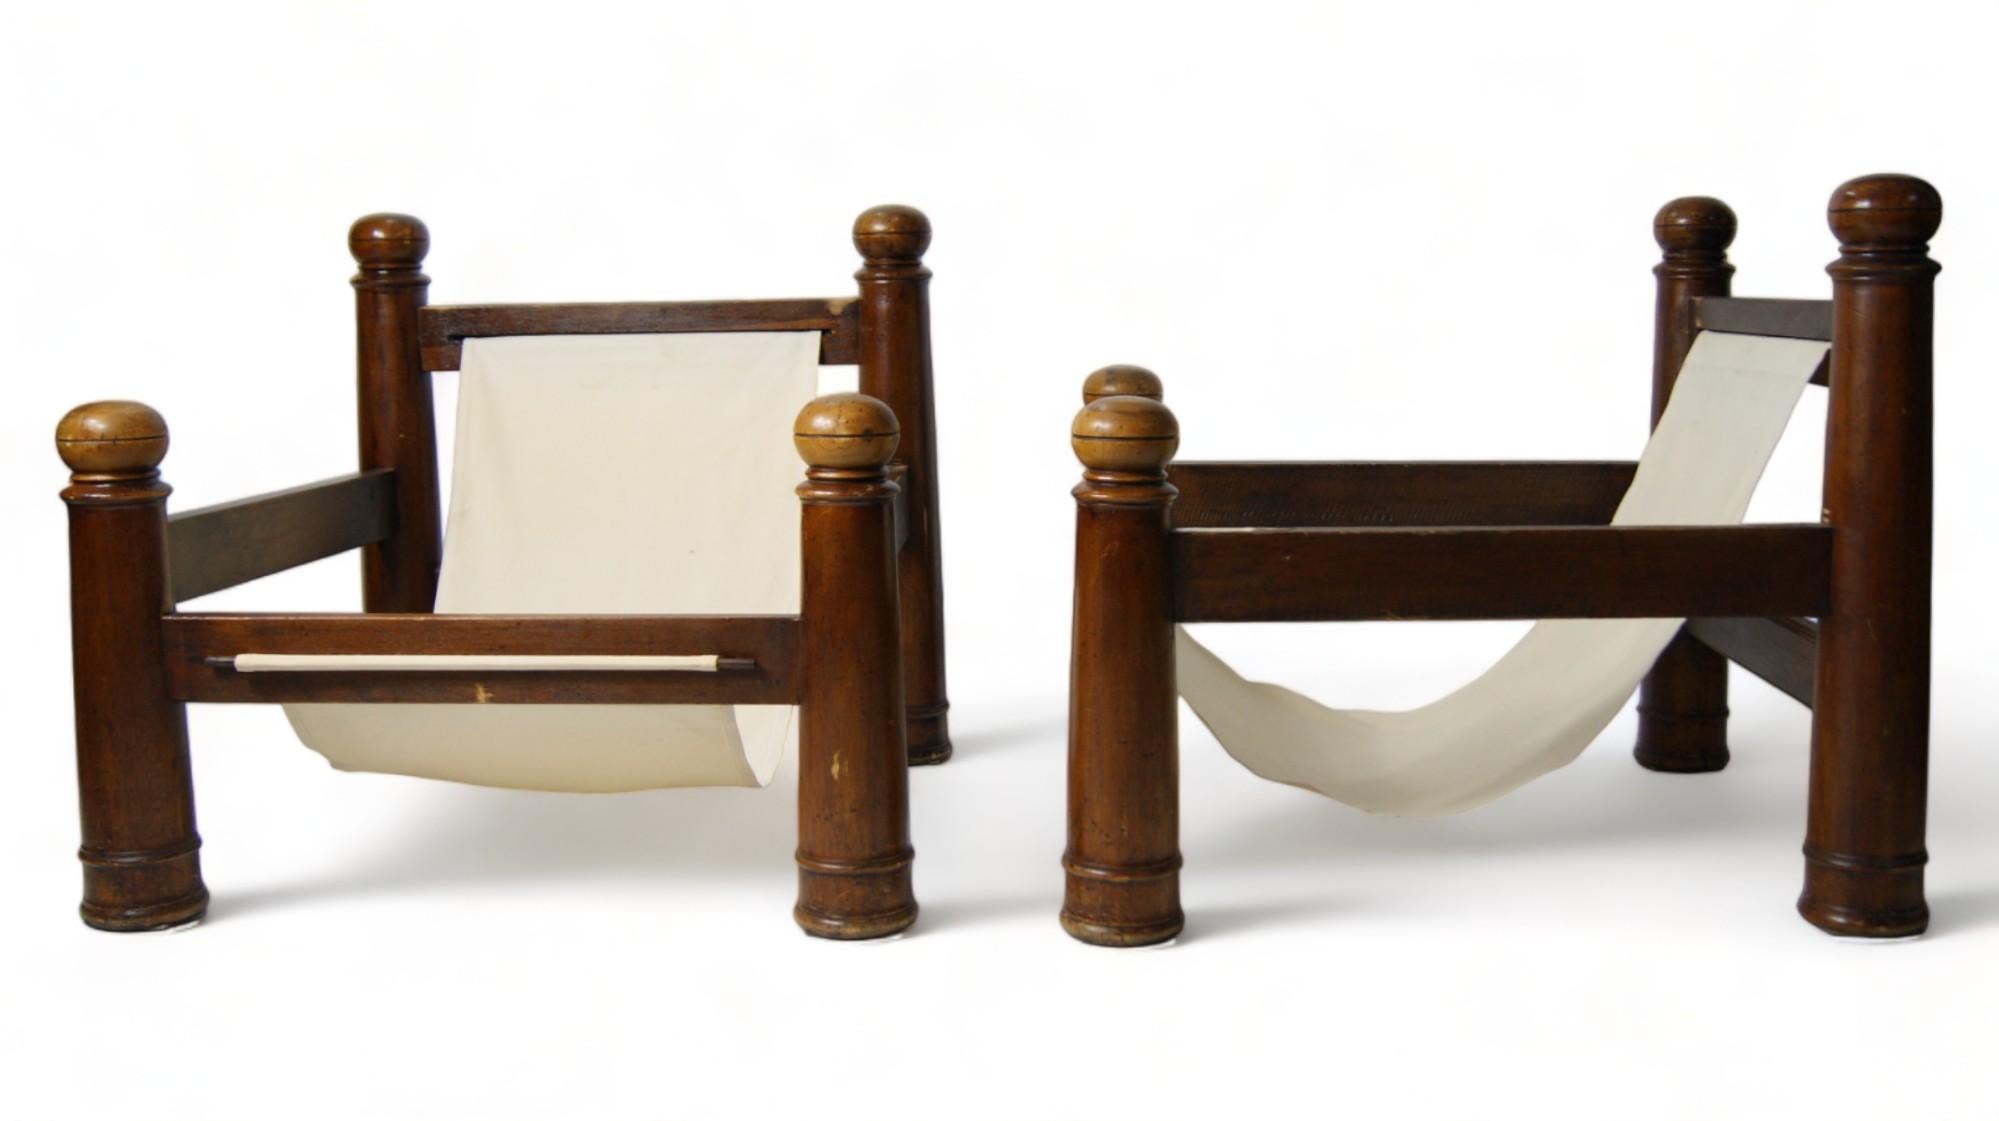 Les grands fauteuils du modèle rare conçu par Charles Dudouyt sont une véritable rareté qui fusionne l'art sculptural et la fonctionnalité. Dudouyt, réputé pour son approche distinctive de la conception de meubles, a laissé une marque indélébile